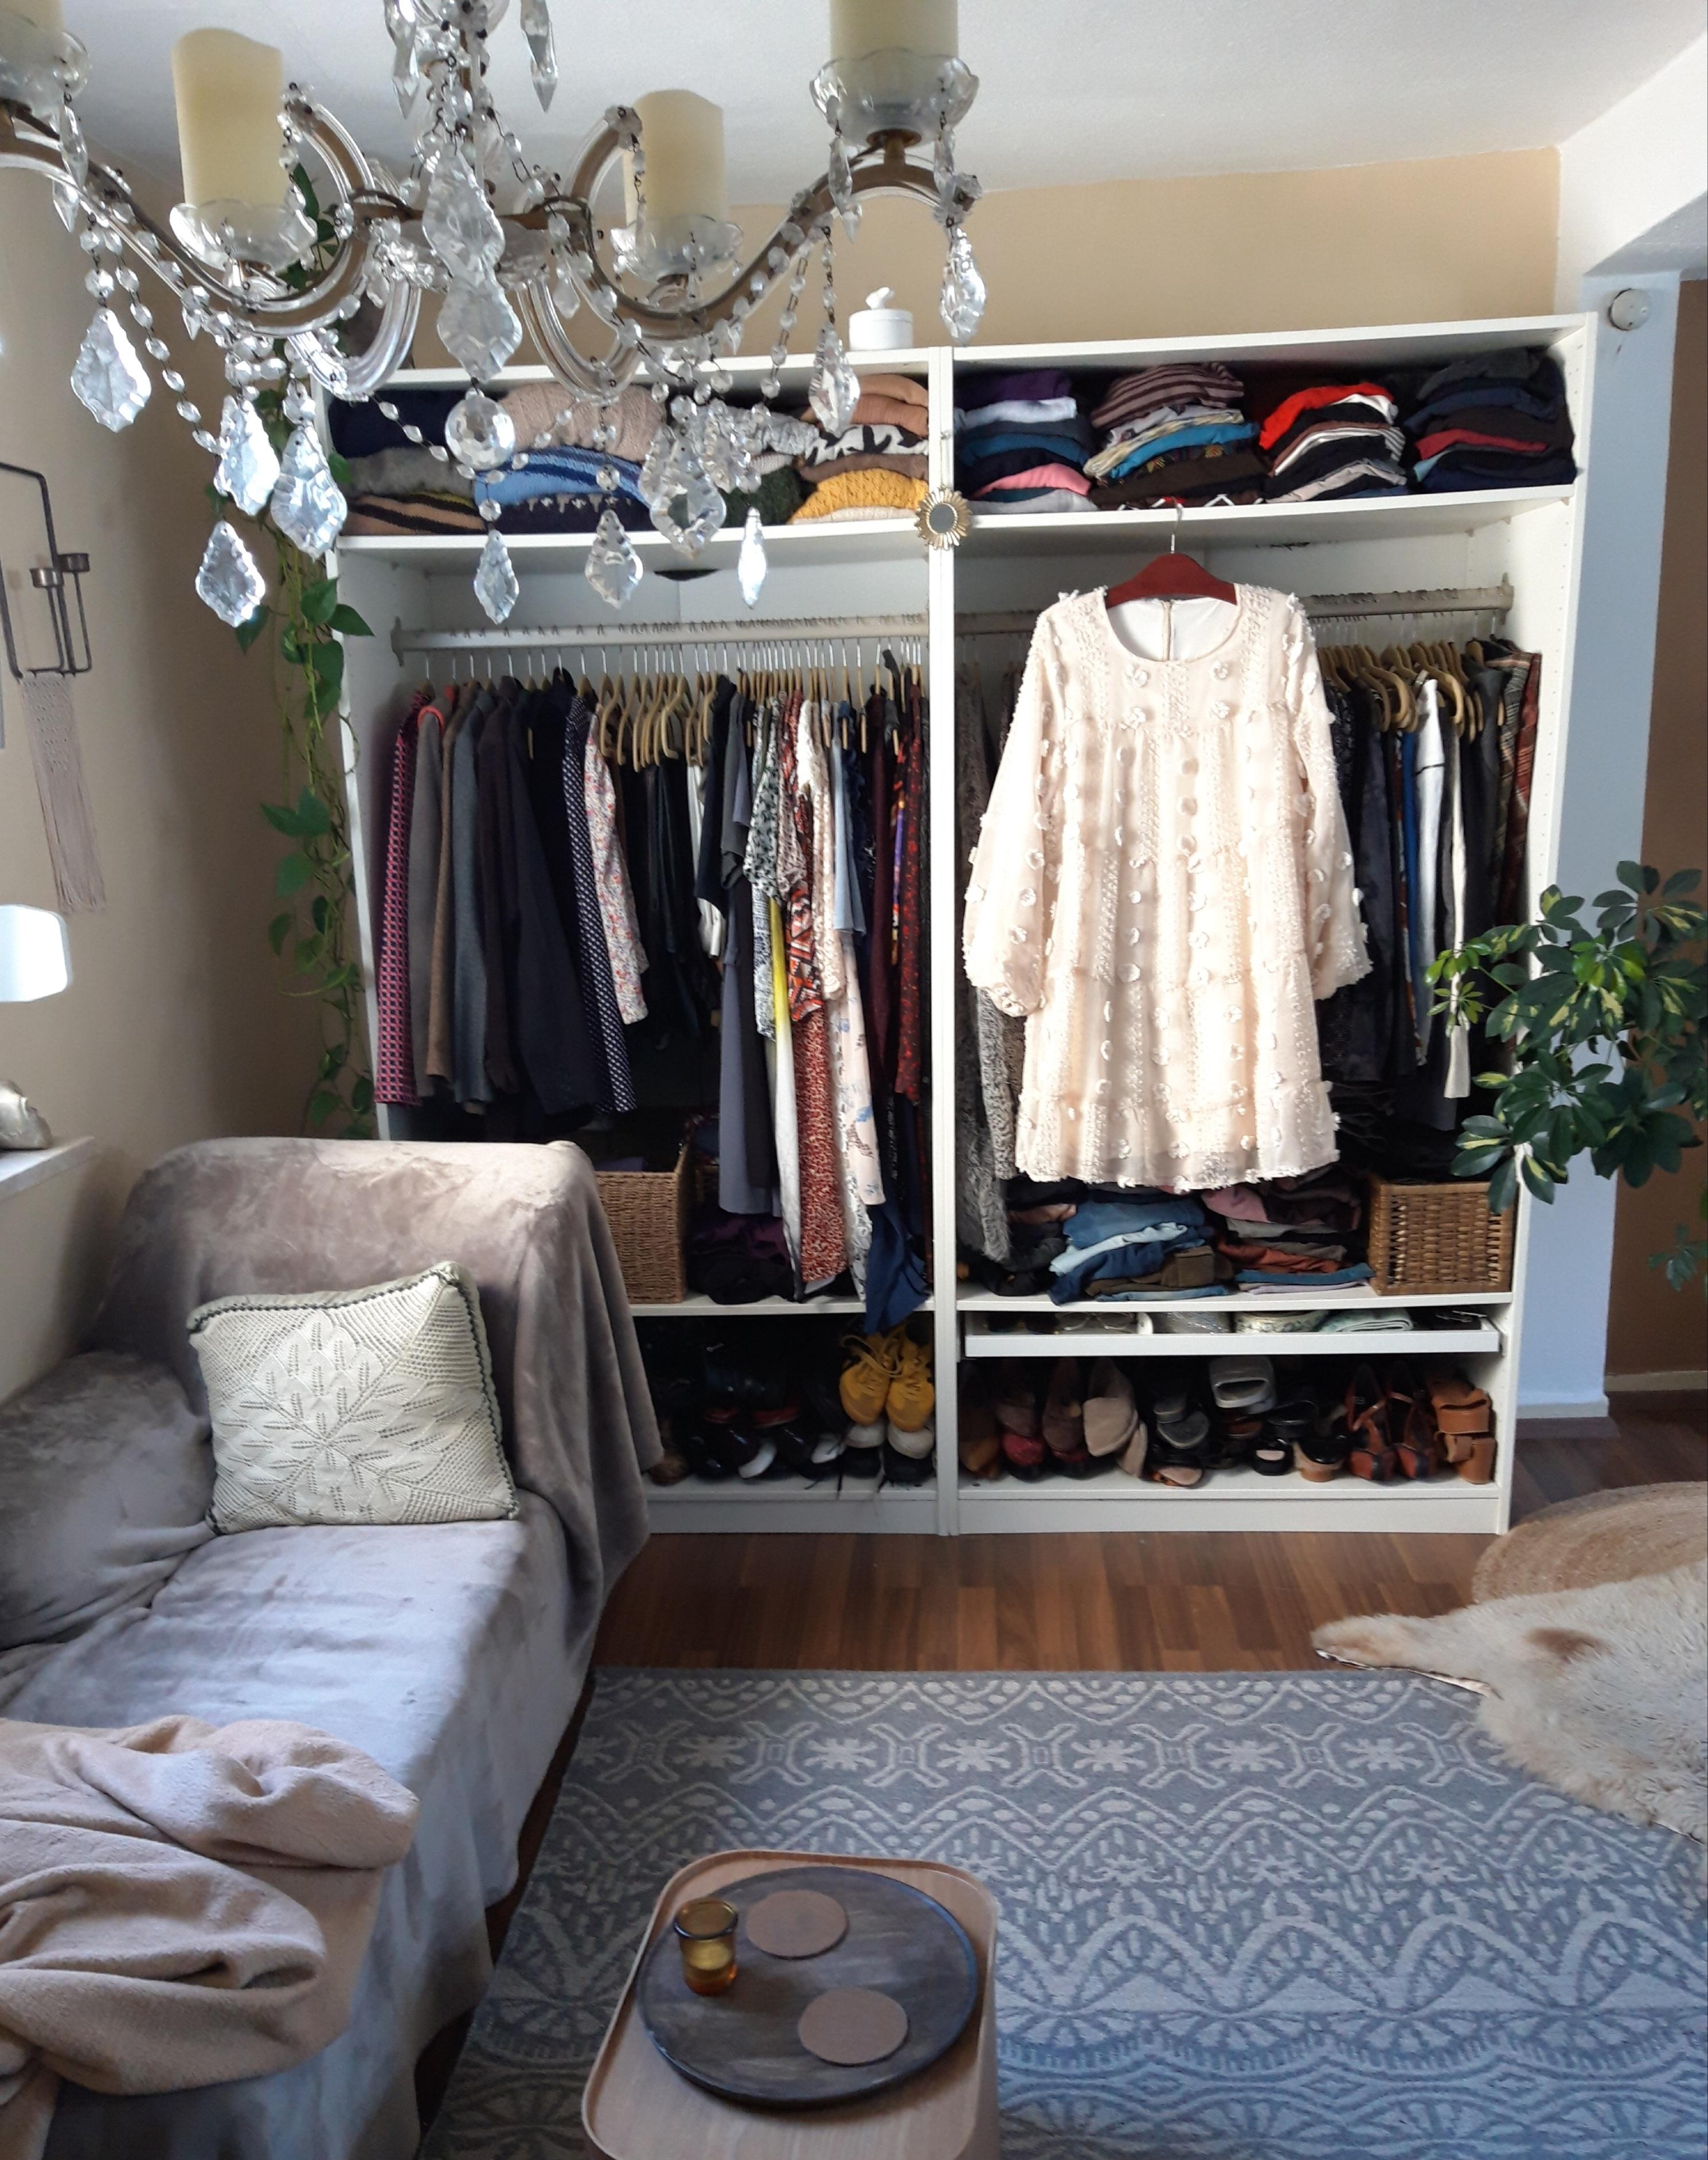 neues #Kleidchen 👗
#Schlafzimmer #Kleiderschrank #sommerkleid #altbau #romantisch #3dkleid